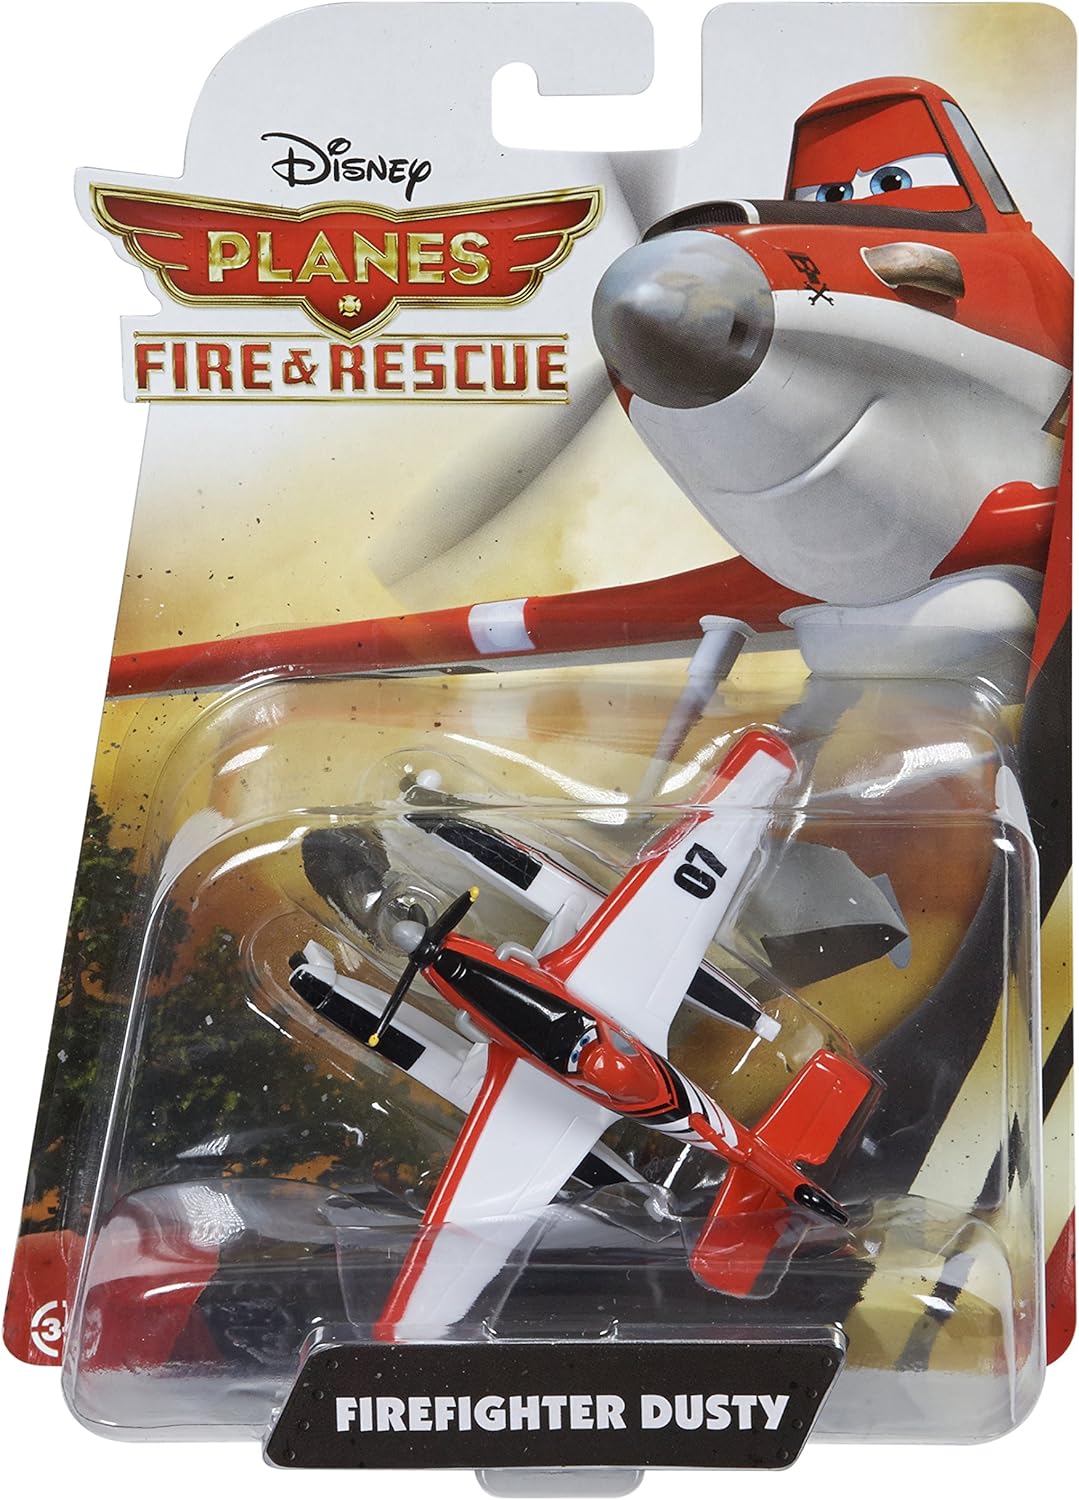 Disney Planes - Firefighter Dusty